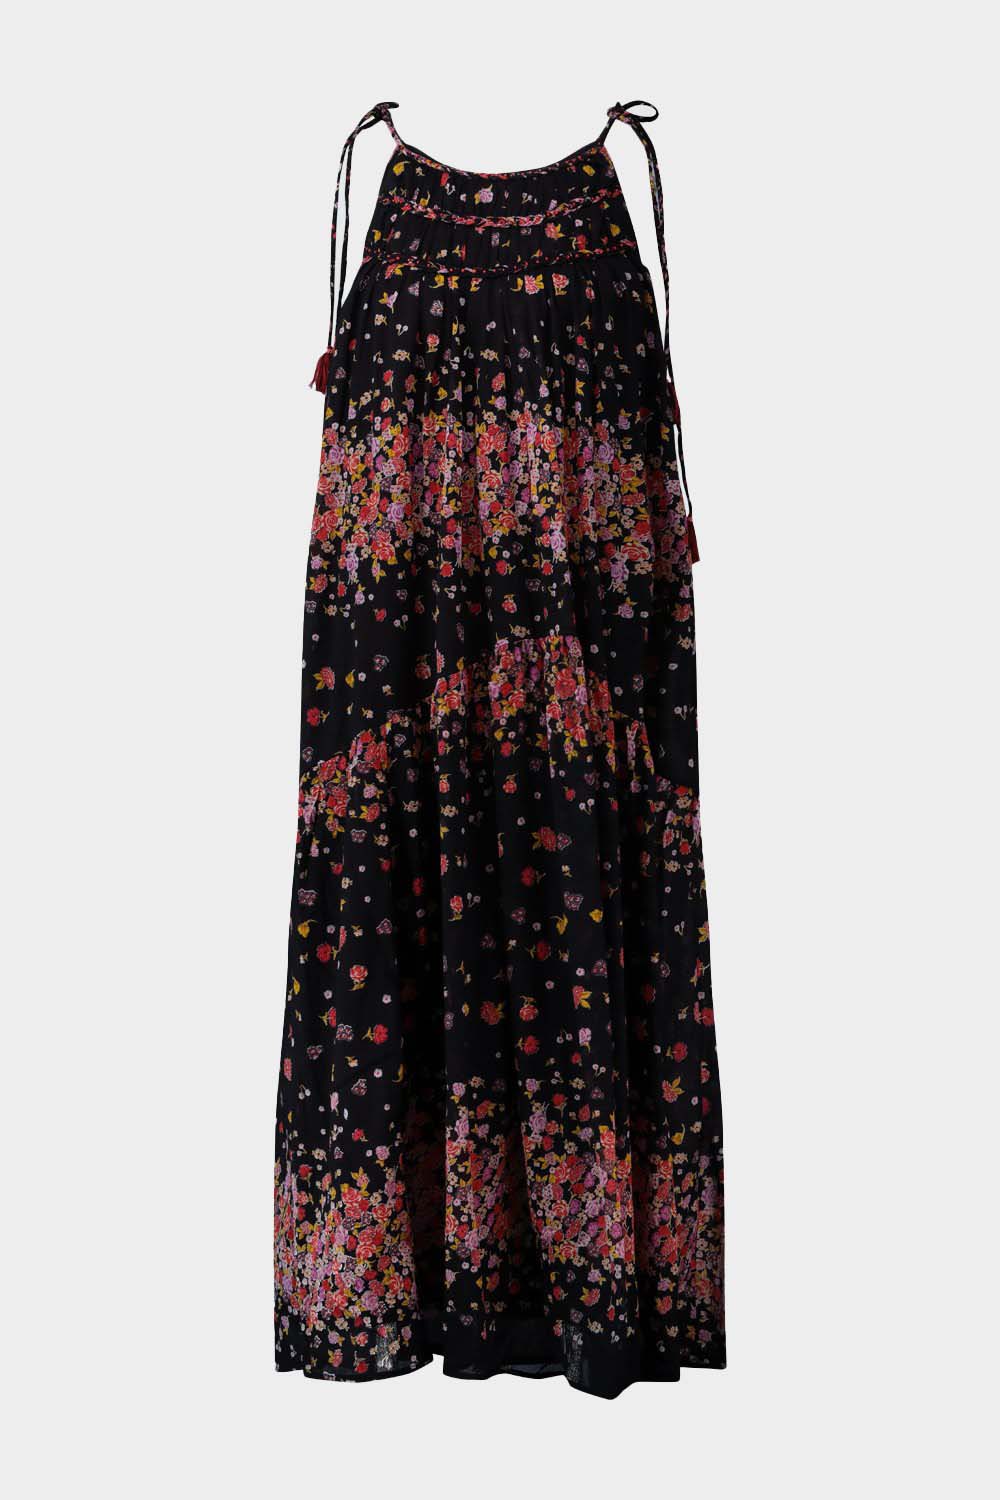 שמלת STENO לנשים הדפס פרחוני RENE DERHY Vendome online | ונדום .